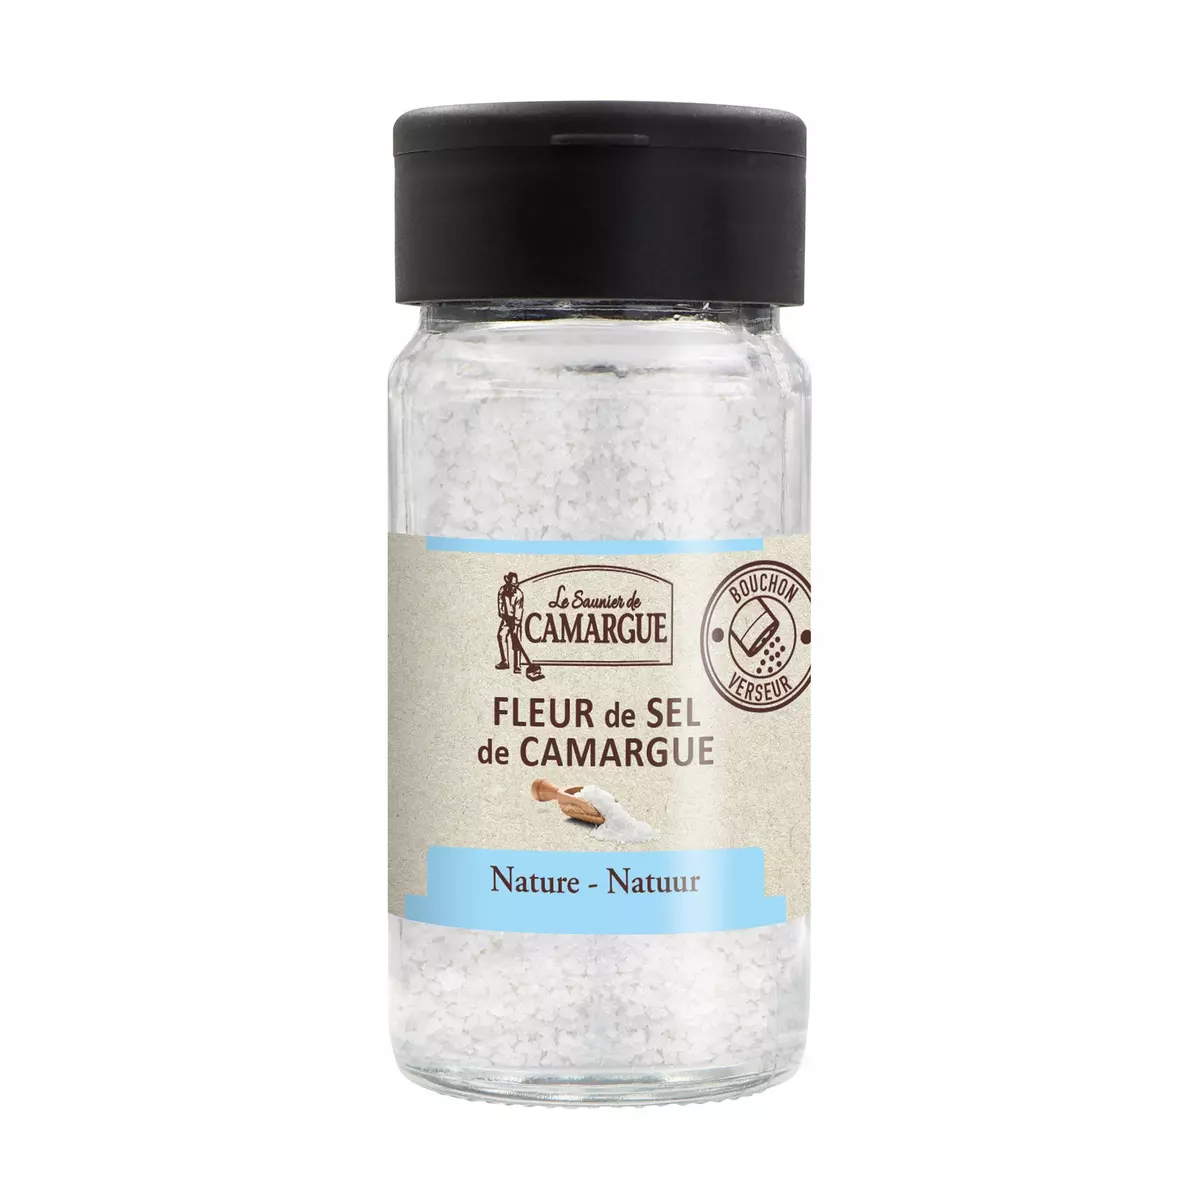 LE SAUNIER DE CAMARGUE Fleur de sel de Camargue nature 80g